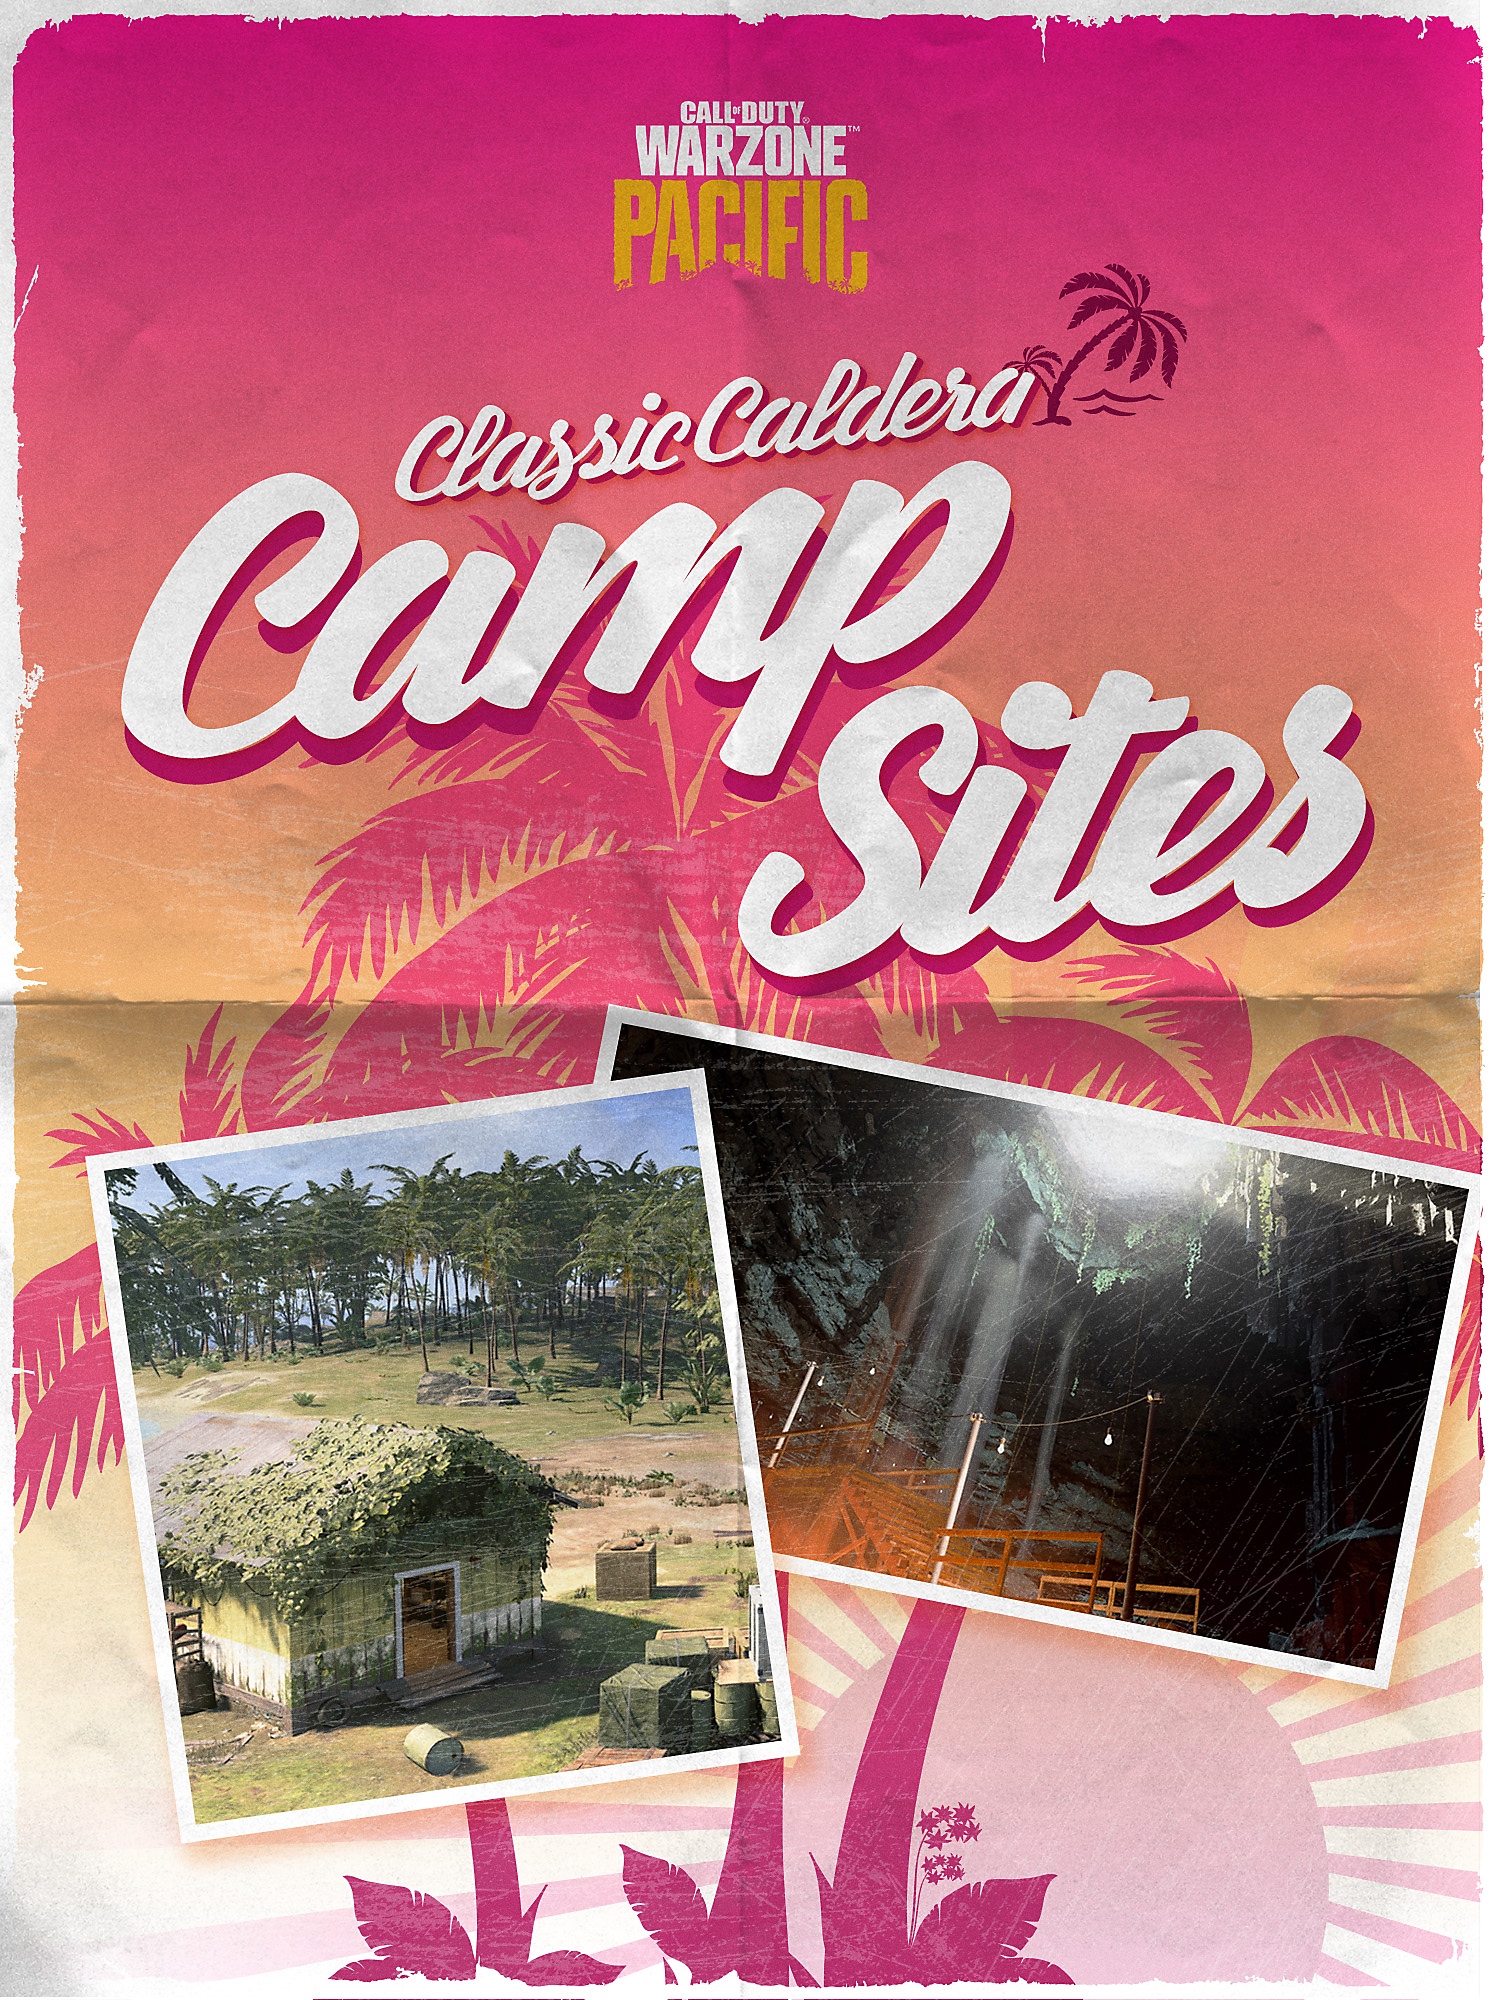 غلاف الدليل السياحي Classic Caldera Campsites